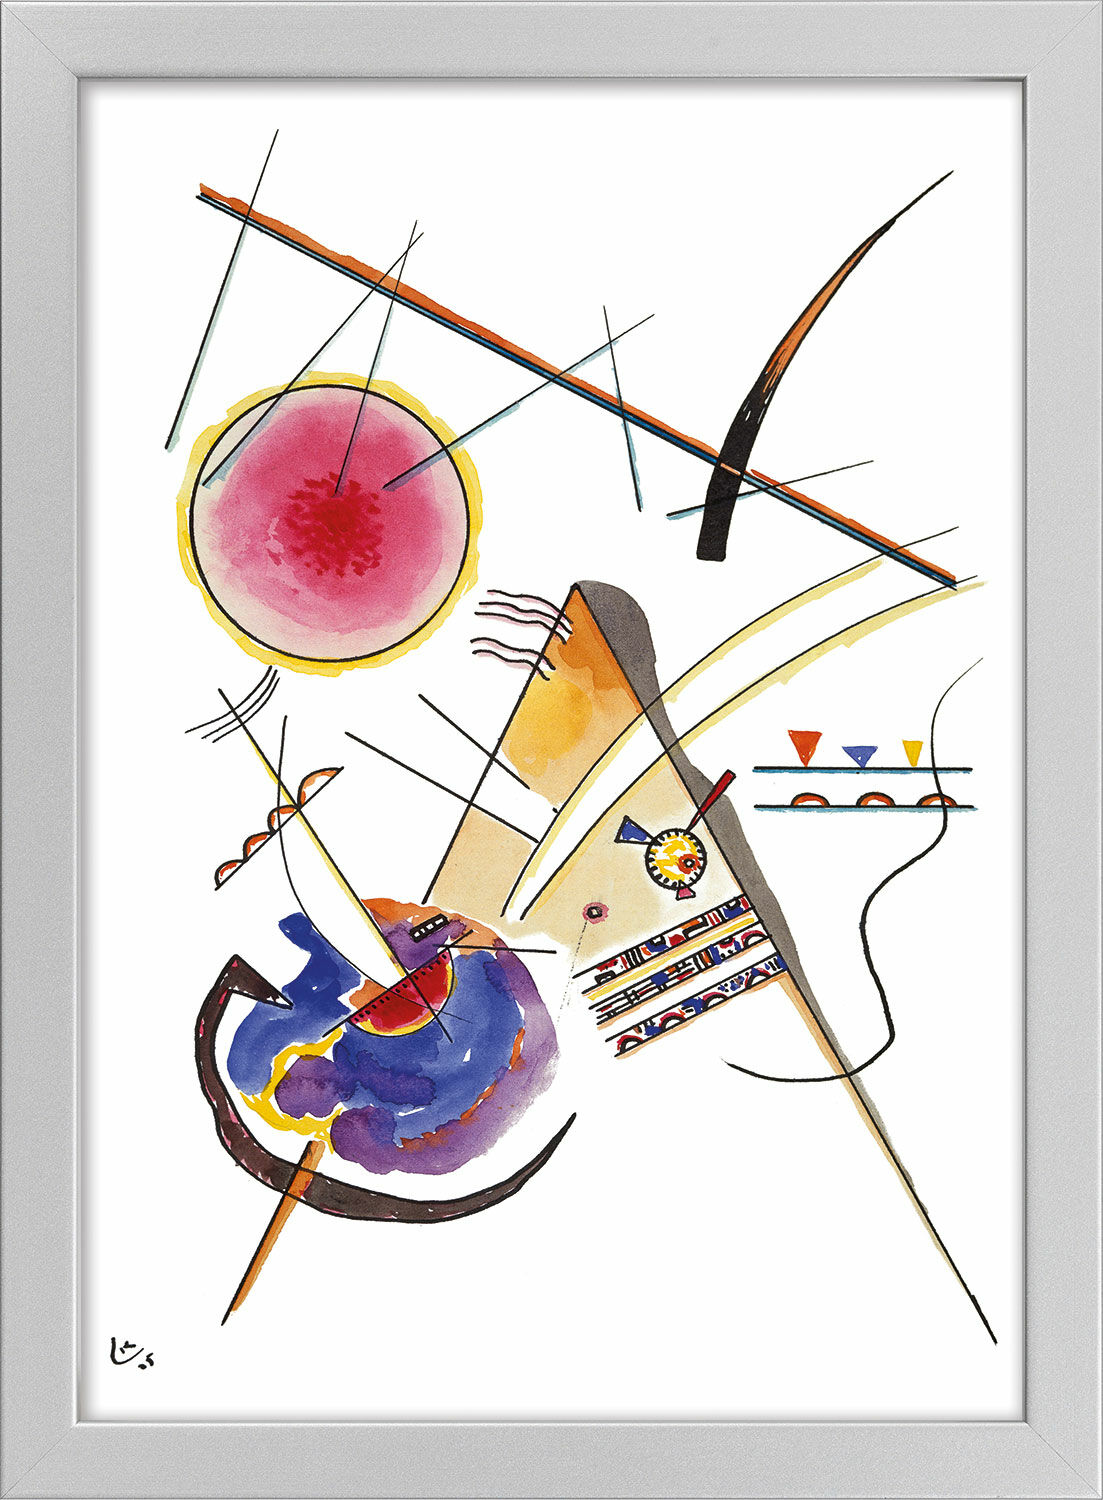 Bild "Komposition" (1925), gerahmt von Wassily Kandinsky